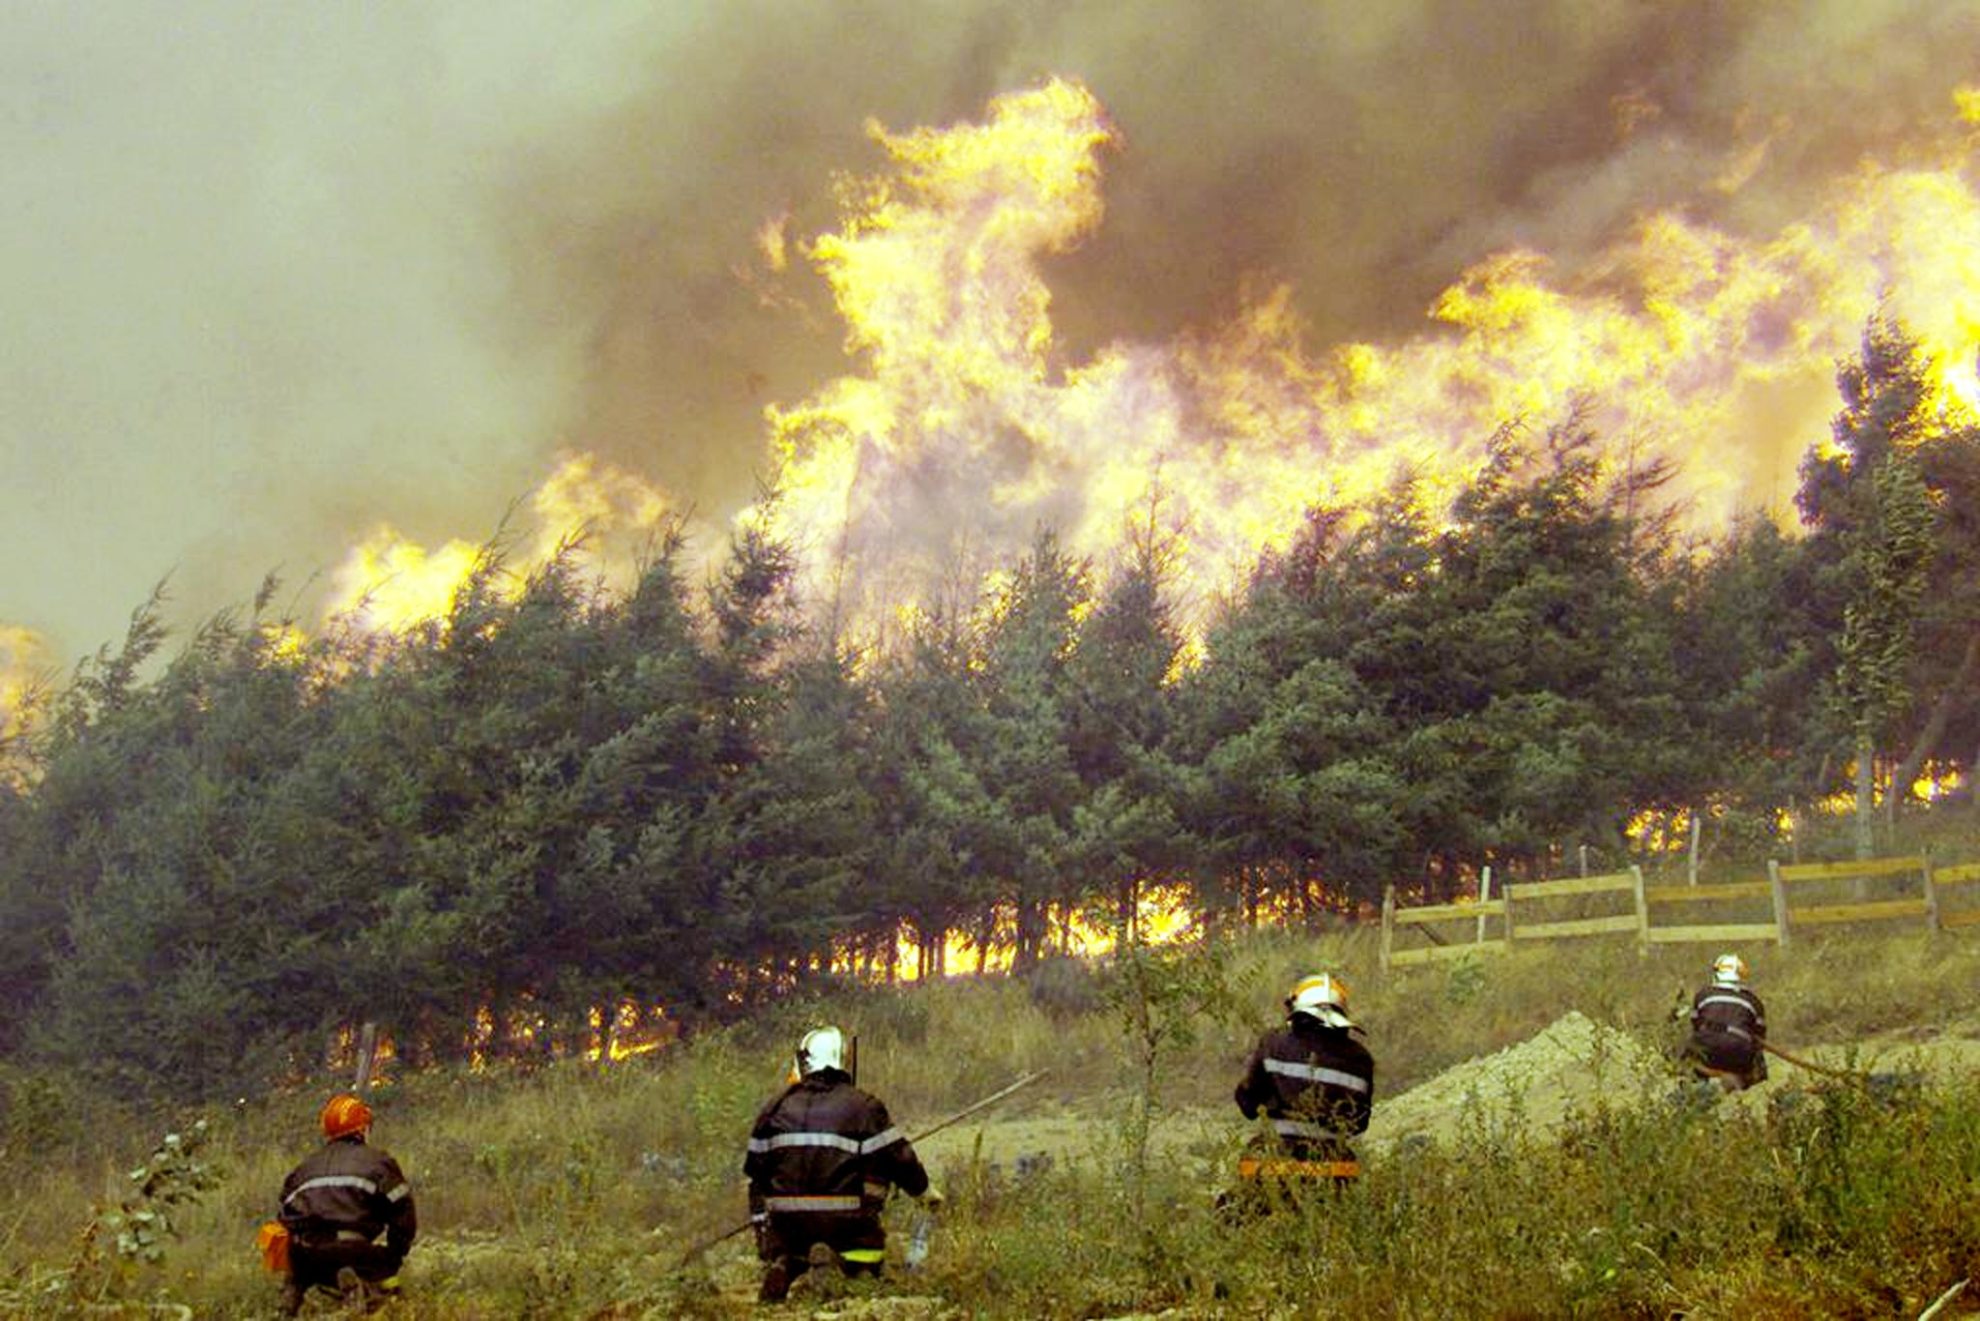 Γαλλία: Νέα πυρκαγιά στην Αρντές – Εκκενώθηκαν χωριό, κατασκηνώσεις, καταφύγιο ζώων και δύο εργοστάσια